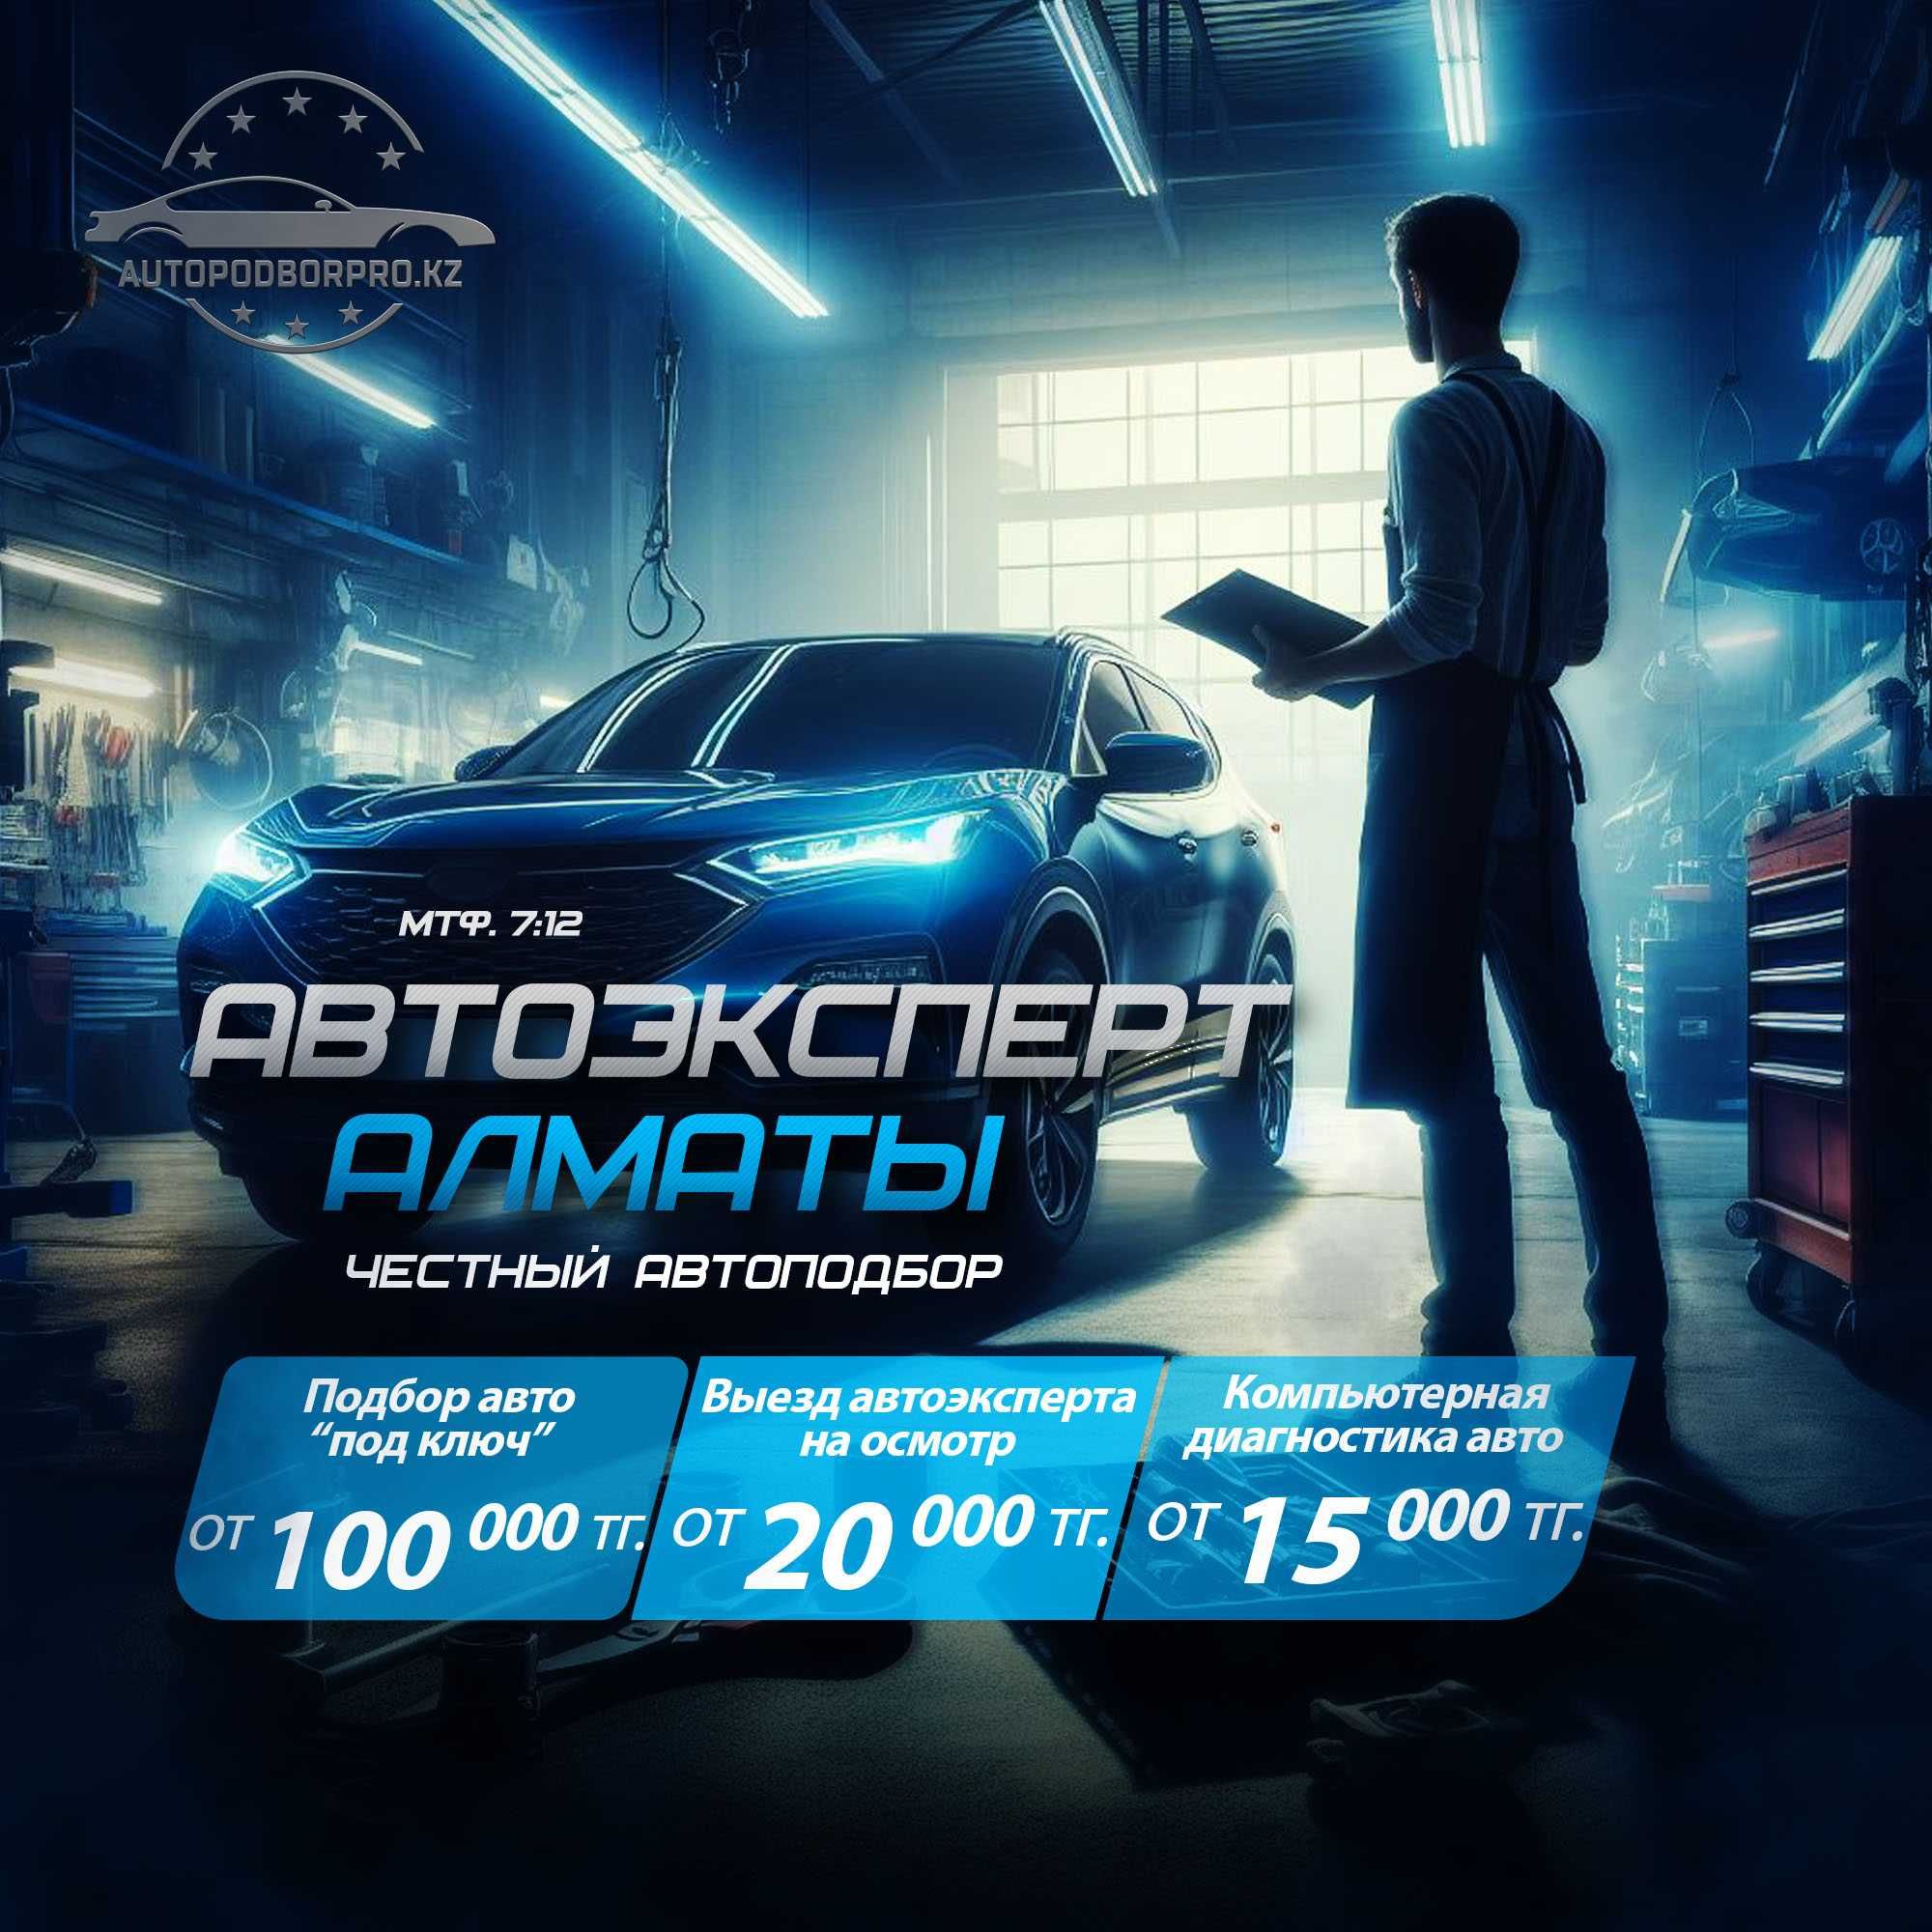 Автоподбор в Алматы, автоэксперт с выездом, компьютерная диагностика